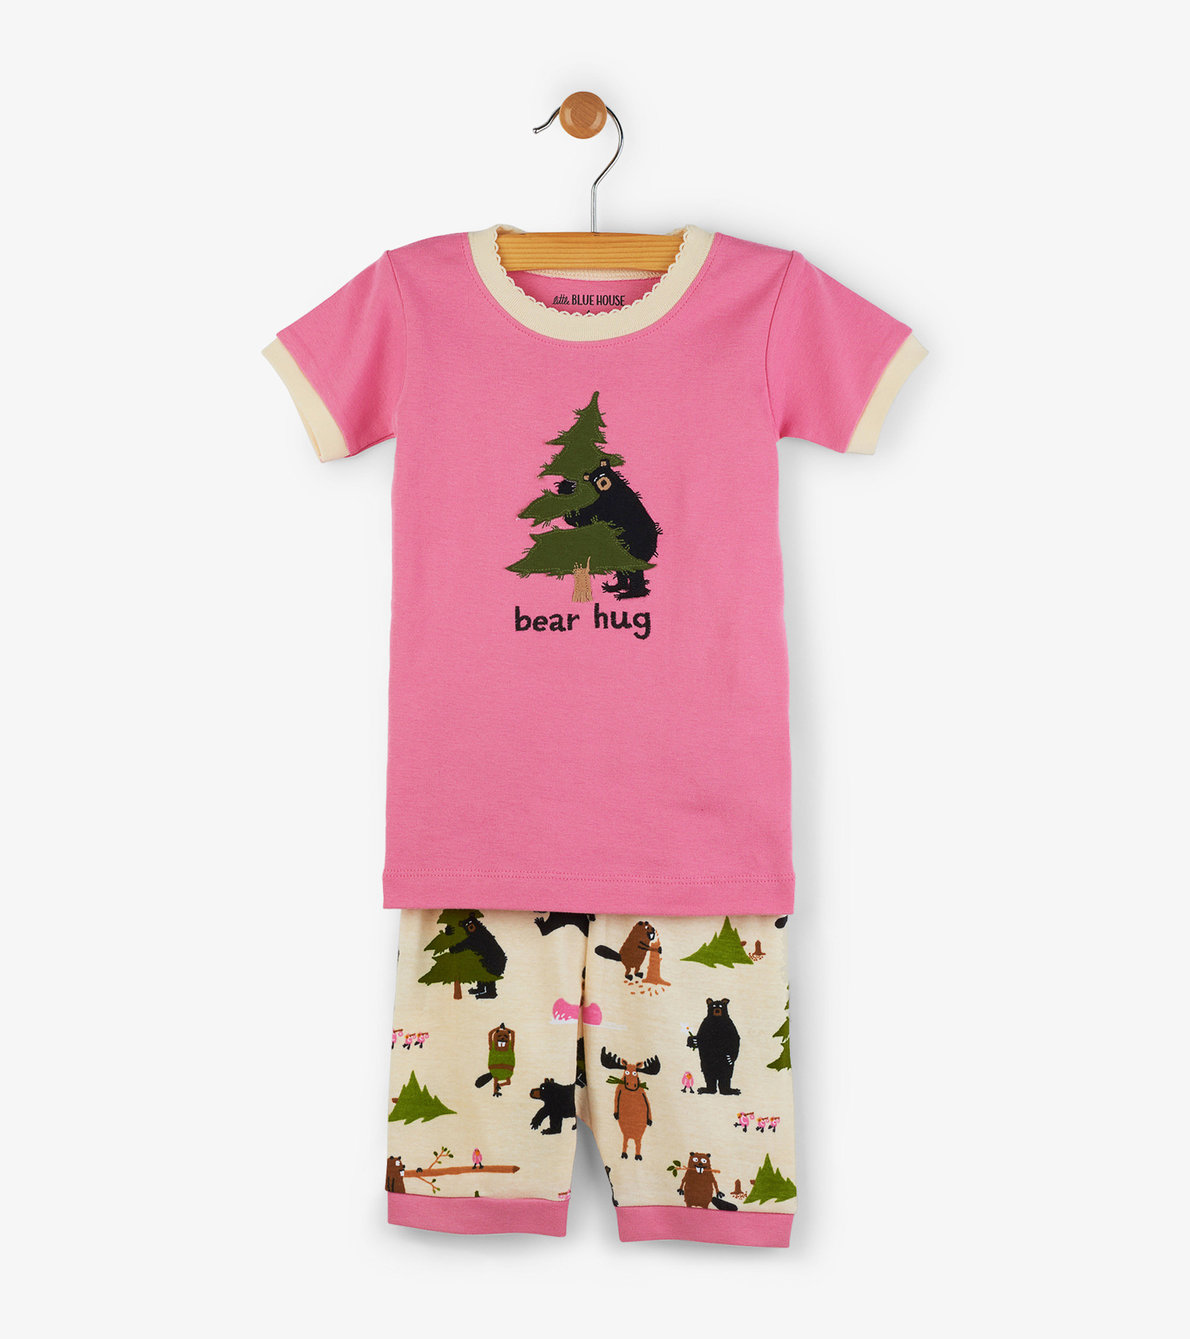 View larger image of Pink "Bear Hug" Kids Short Pajama Set